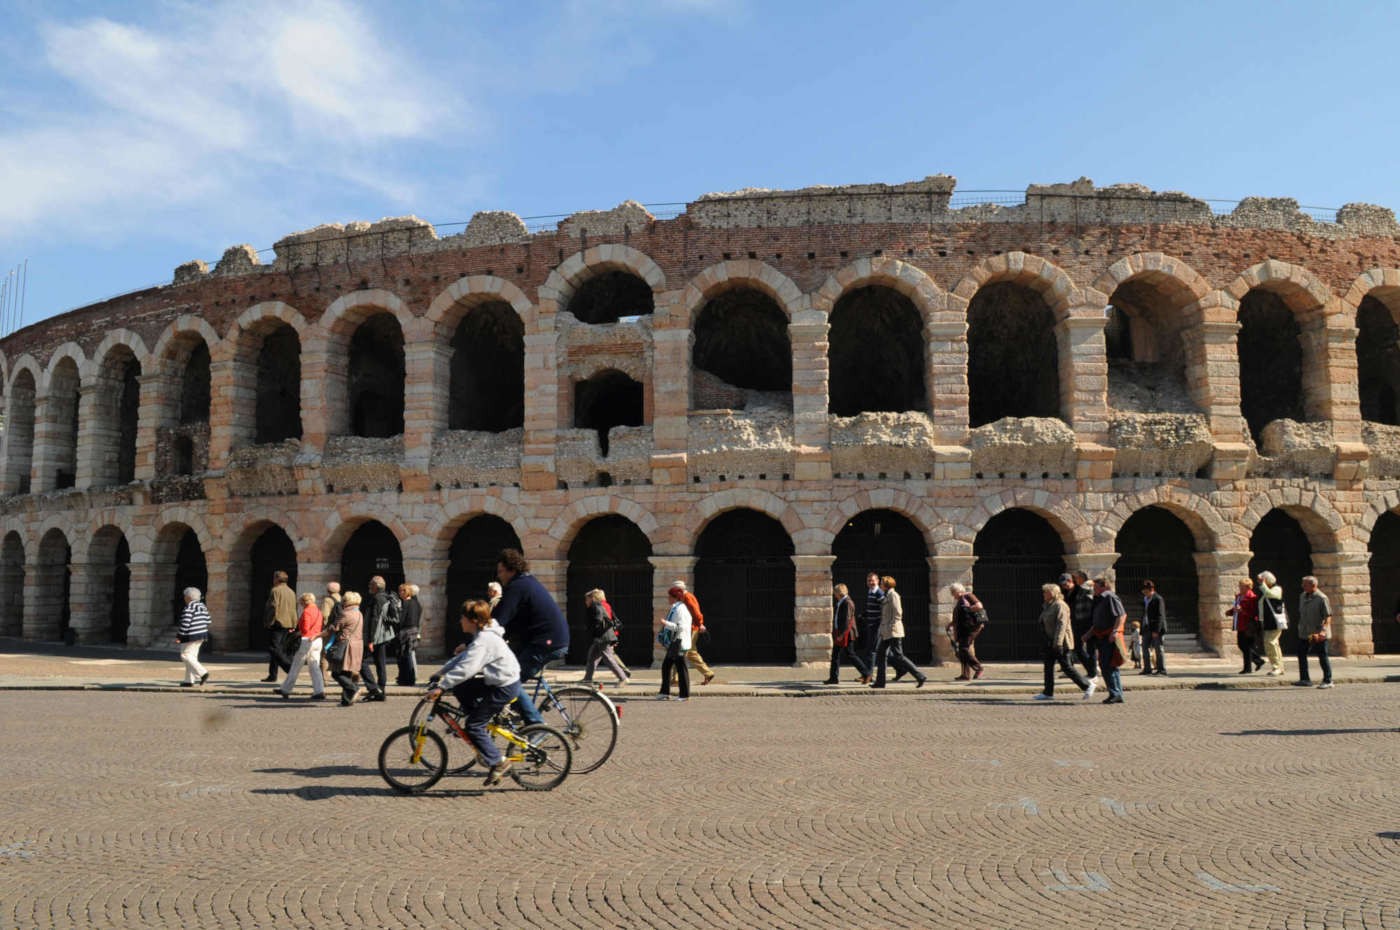 L'Arena di Verona, il simbolo della città